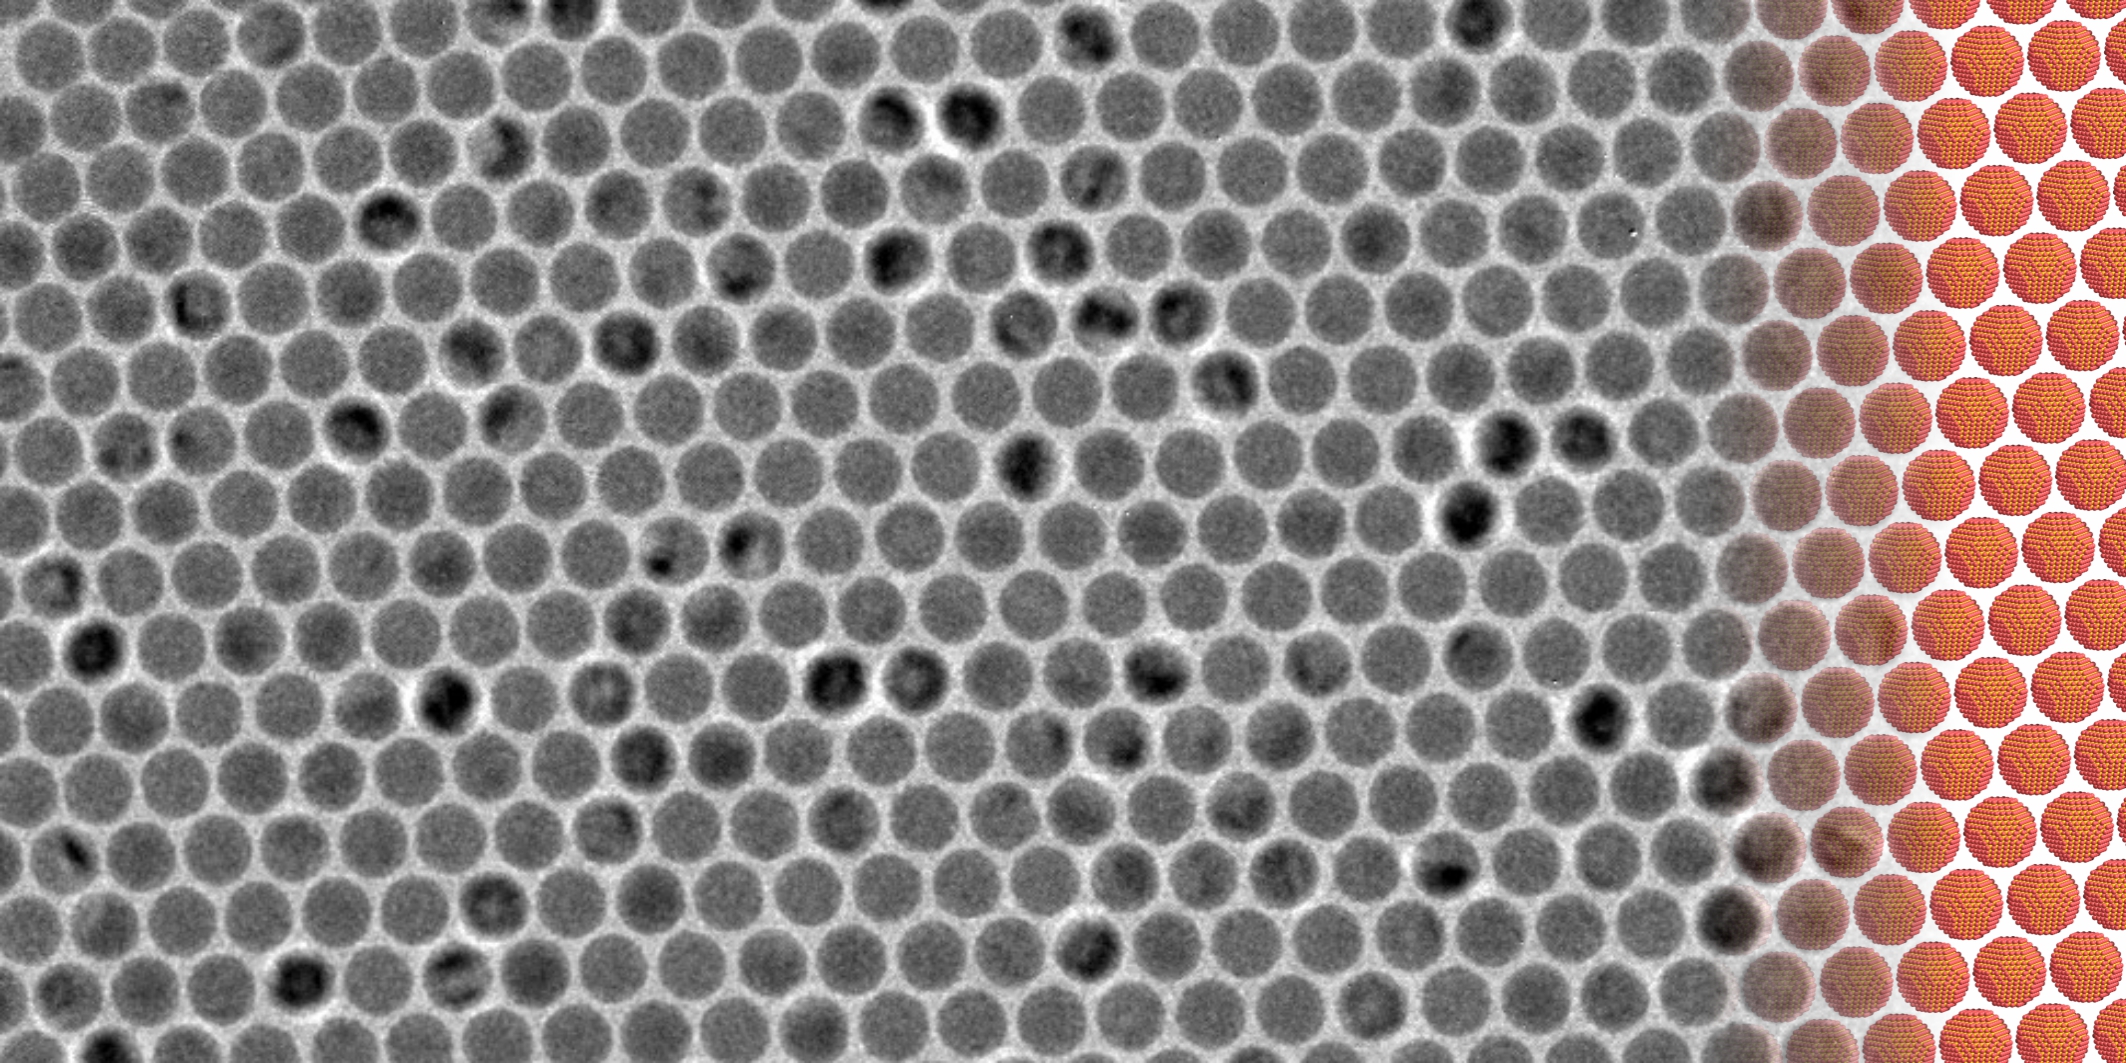 Enlarged view: Record-uniform nanocrystals